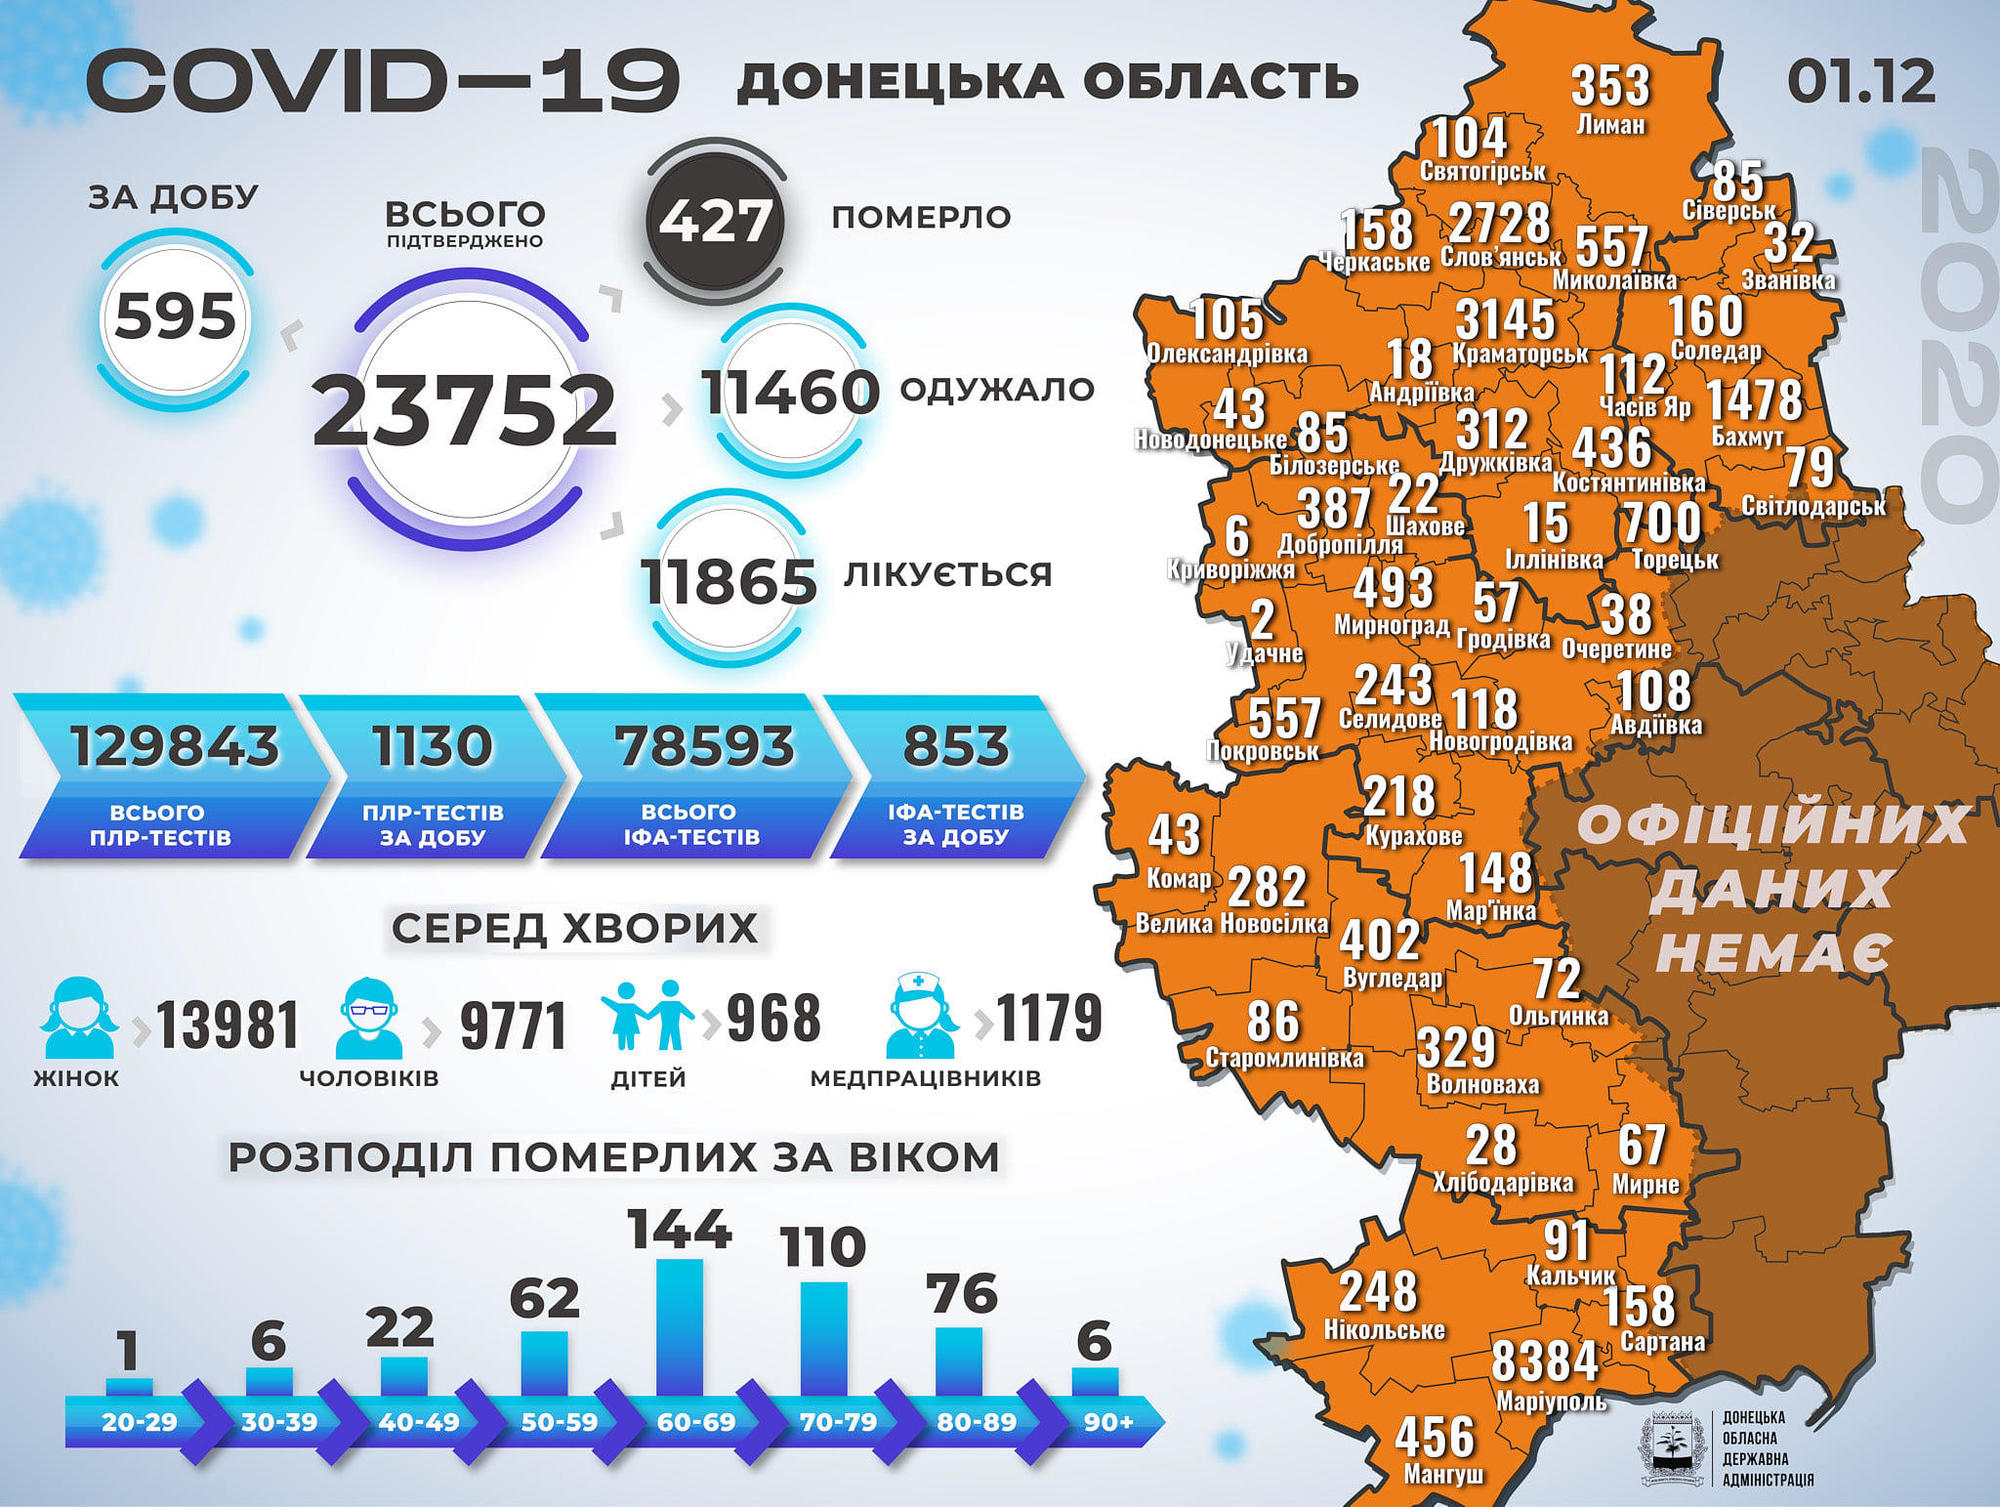 COVID-19: в Україні за добу одужали більше людей, ніж підтвердили хворих, а в ДонОДА кажуть про +9 померлих